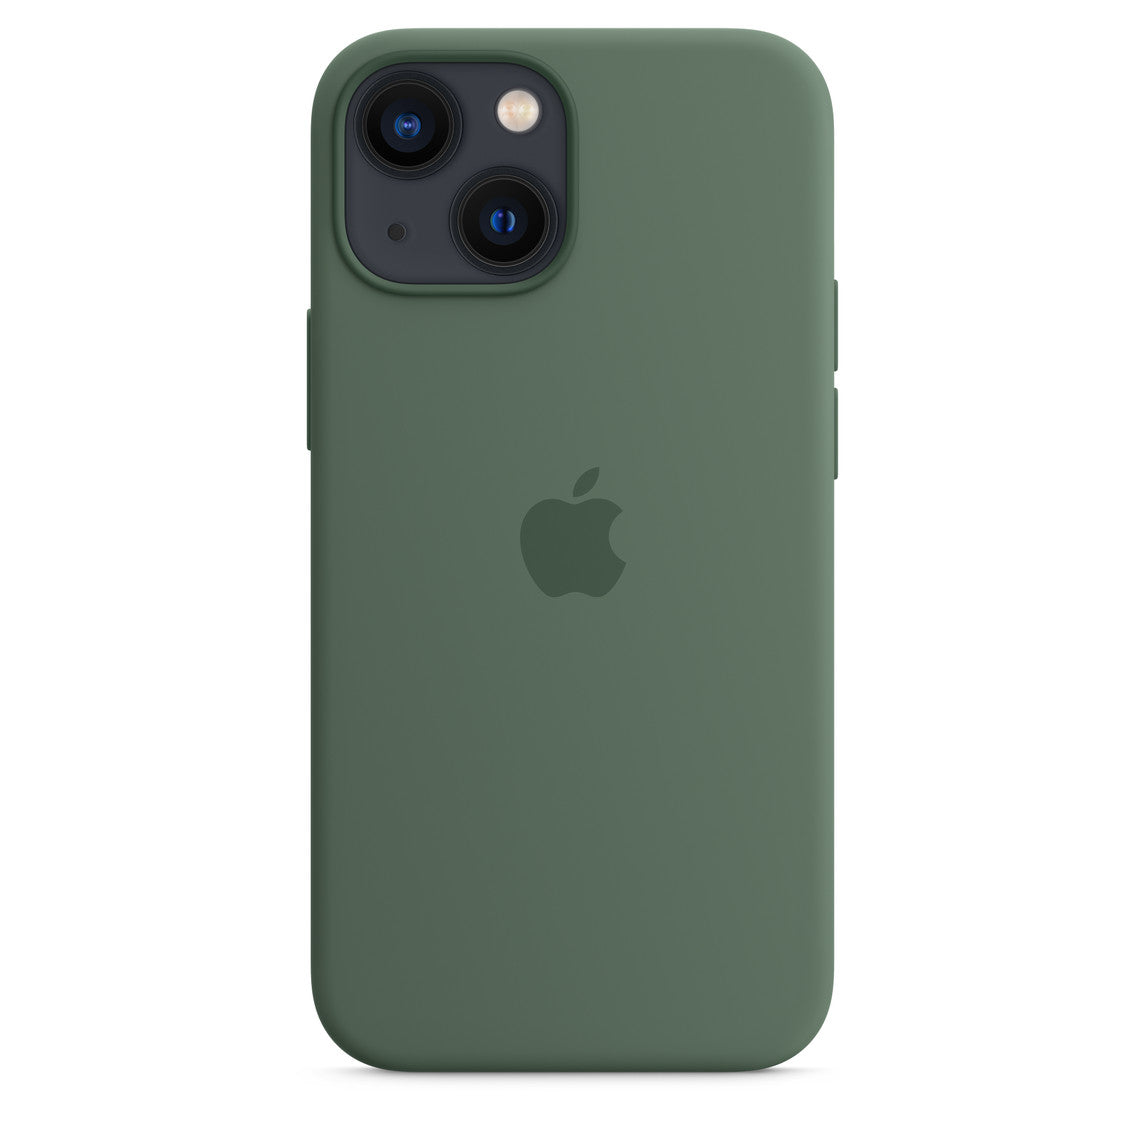 iPhone Silicone Phone Case - Premium